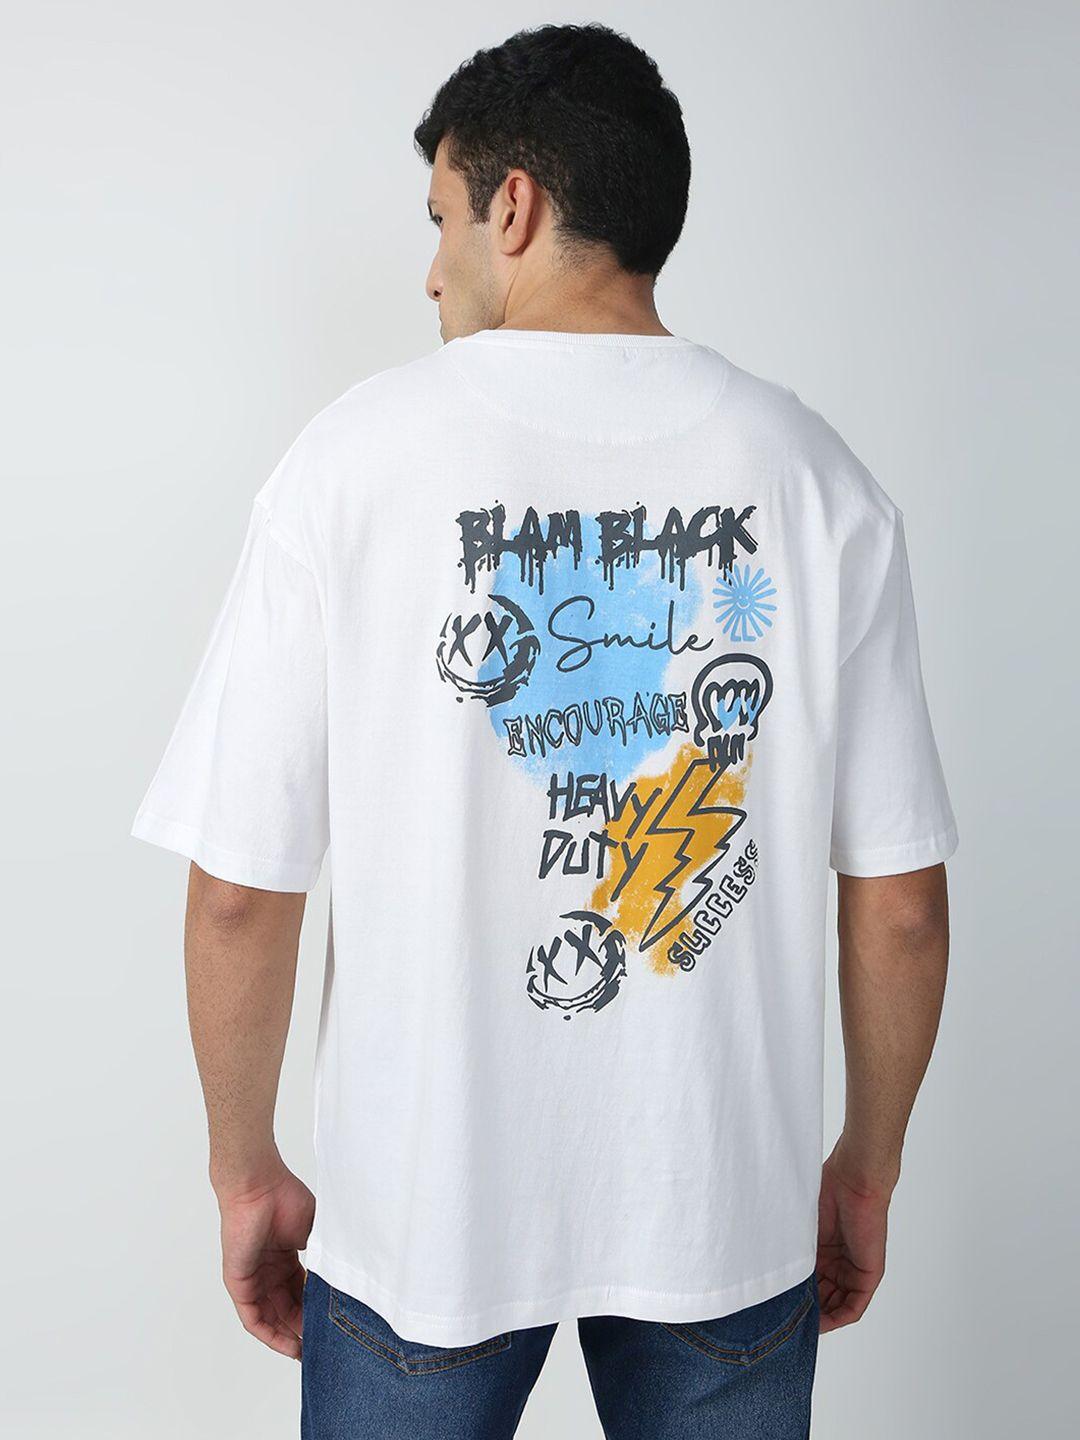 blamblack men typography printed t-shirt